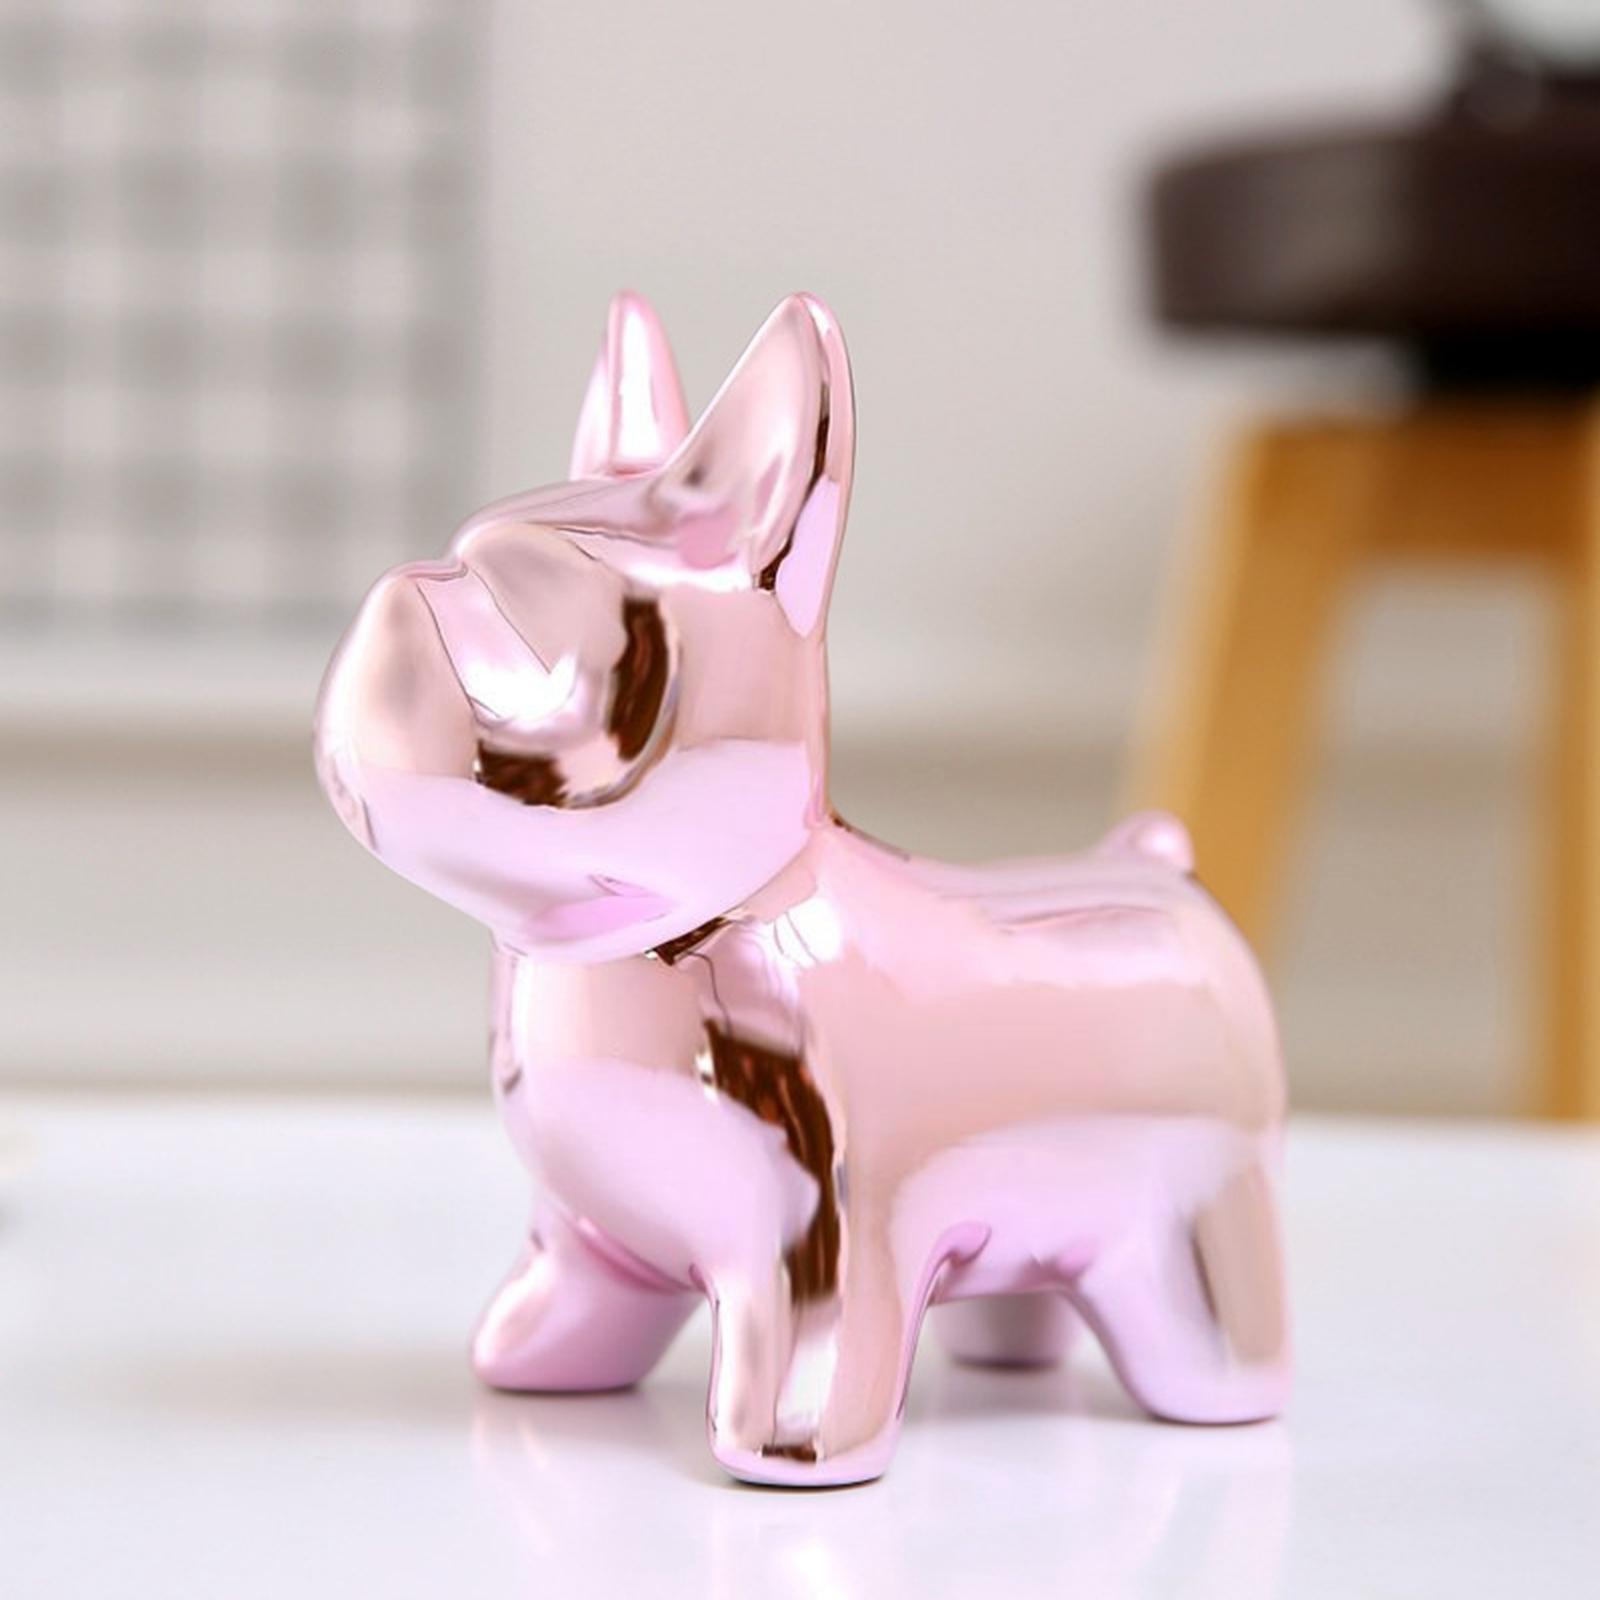 Bulldog Piggy Bank Figurine Sculpture Cash Coins Money Saving Box  pink